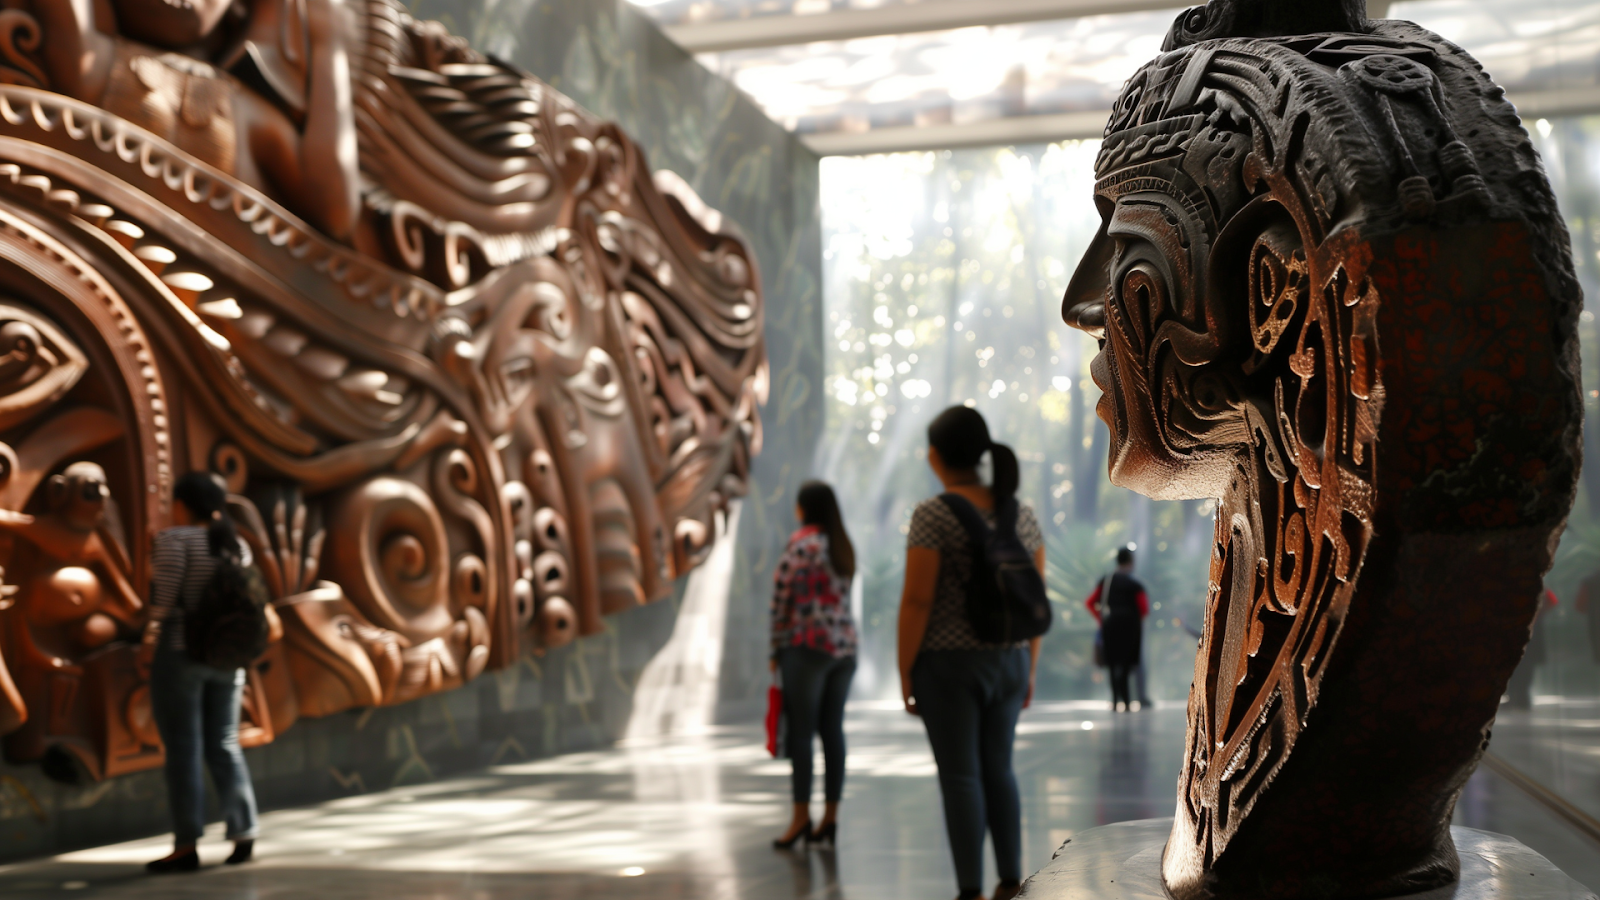 Visitors admiring artwork at Museo Soumaya in Polanco, Mexico City.